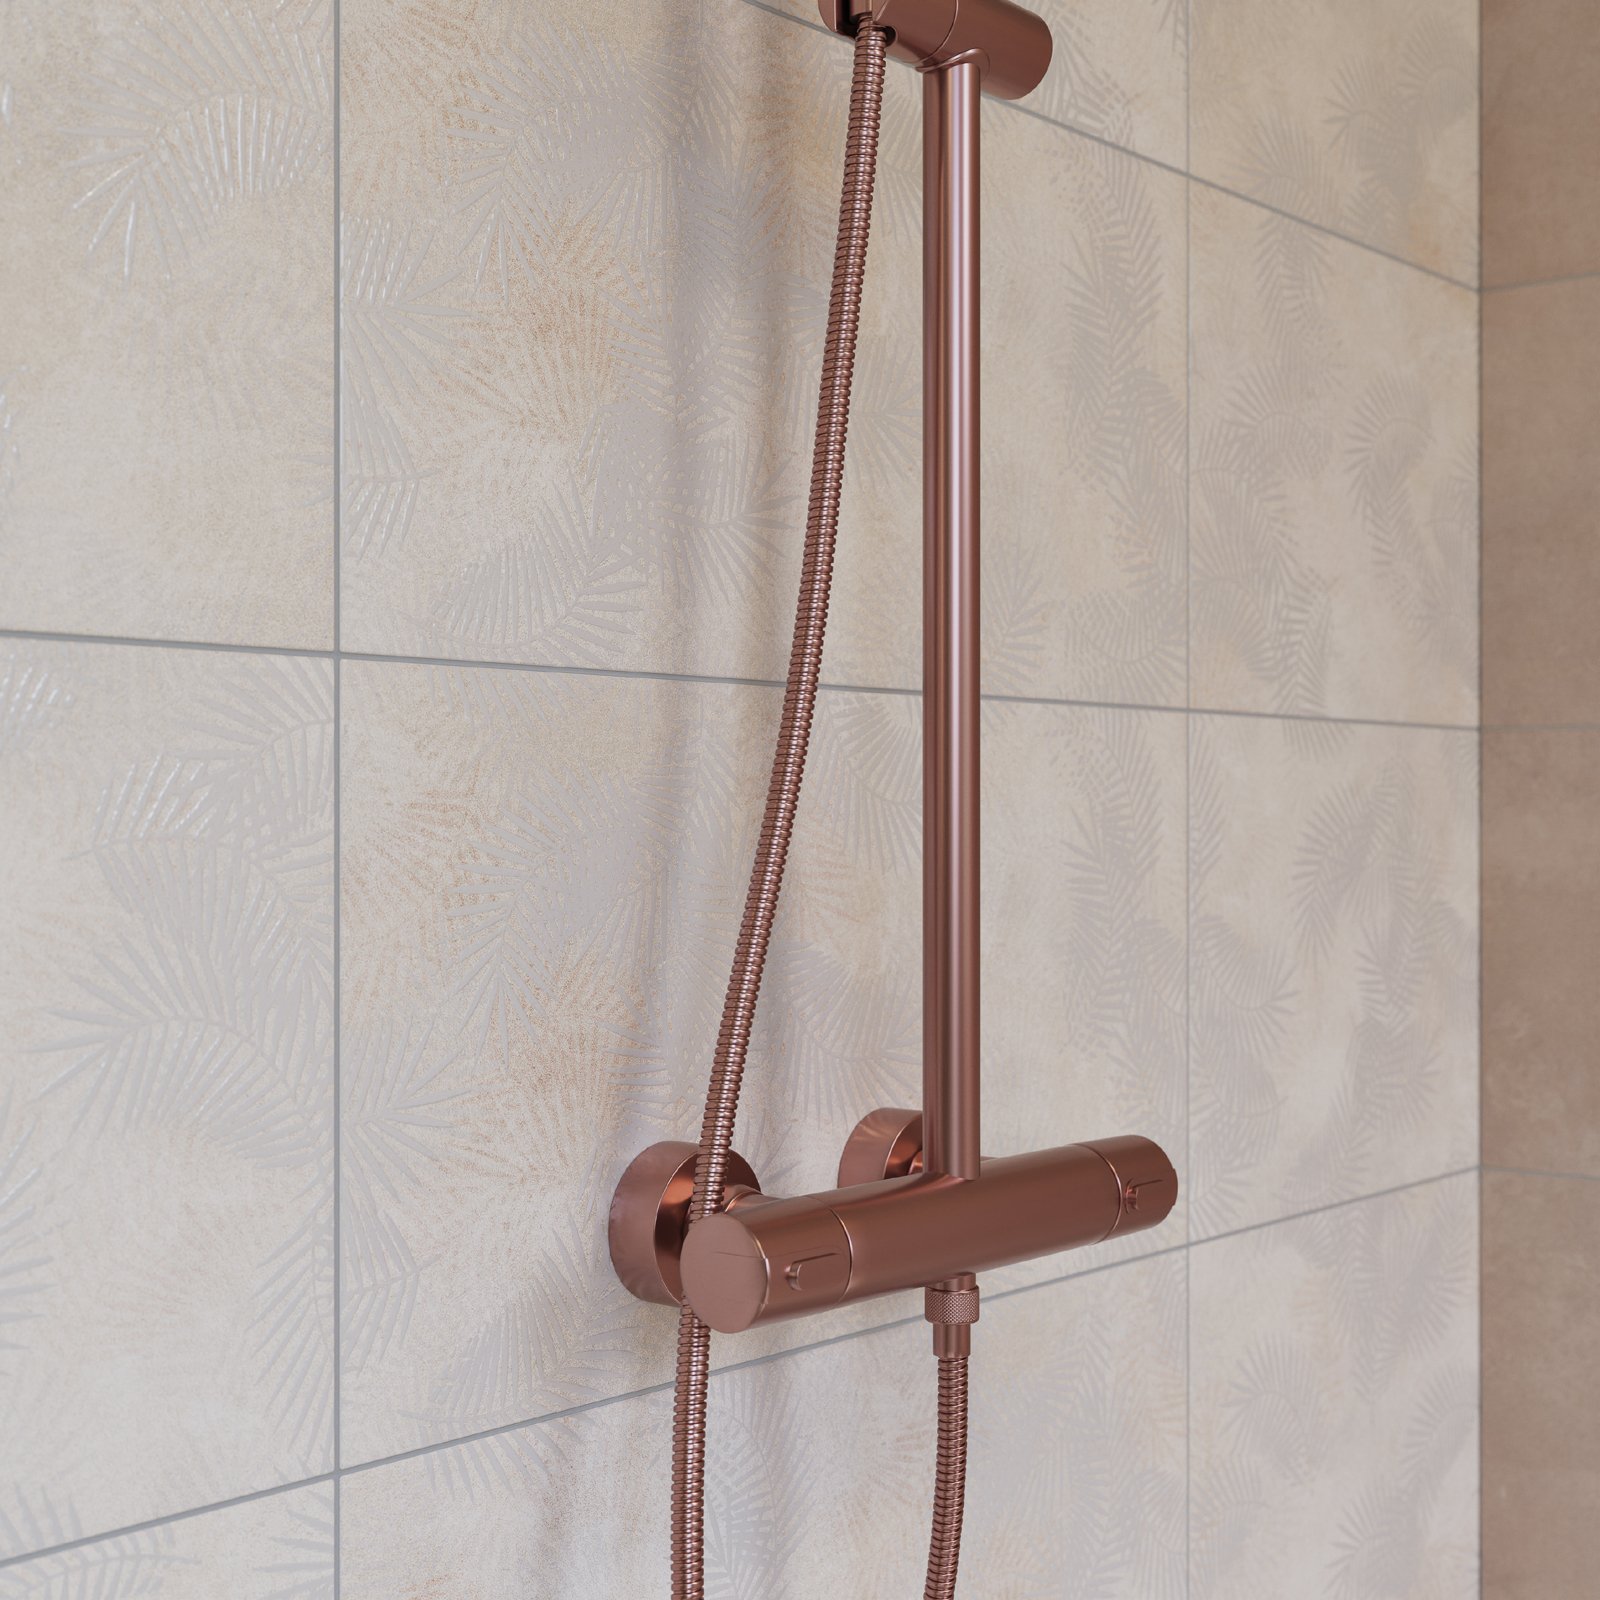 #RAKO #Lampea #Obklady a dlažby #Koupelna #beton #Moderní styl #béžová #Matný obklad #Velký formát #350 - 500 Kč/m2 #500 - 700 Kč/m2 #new 